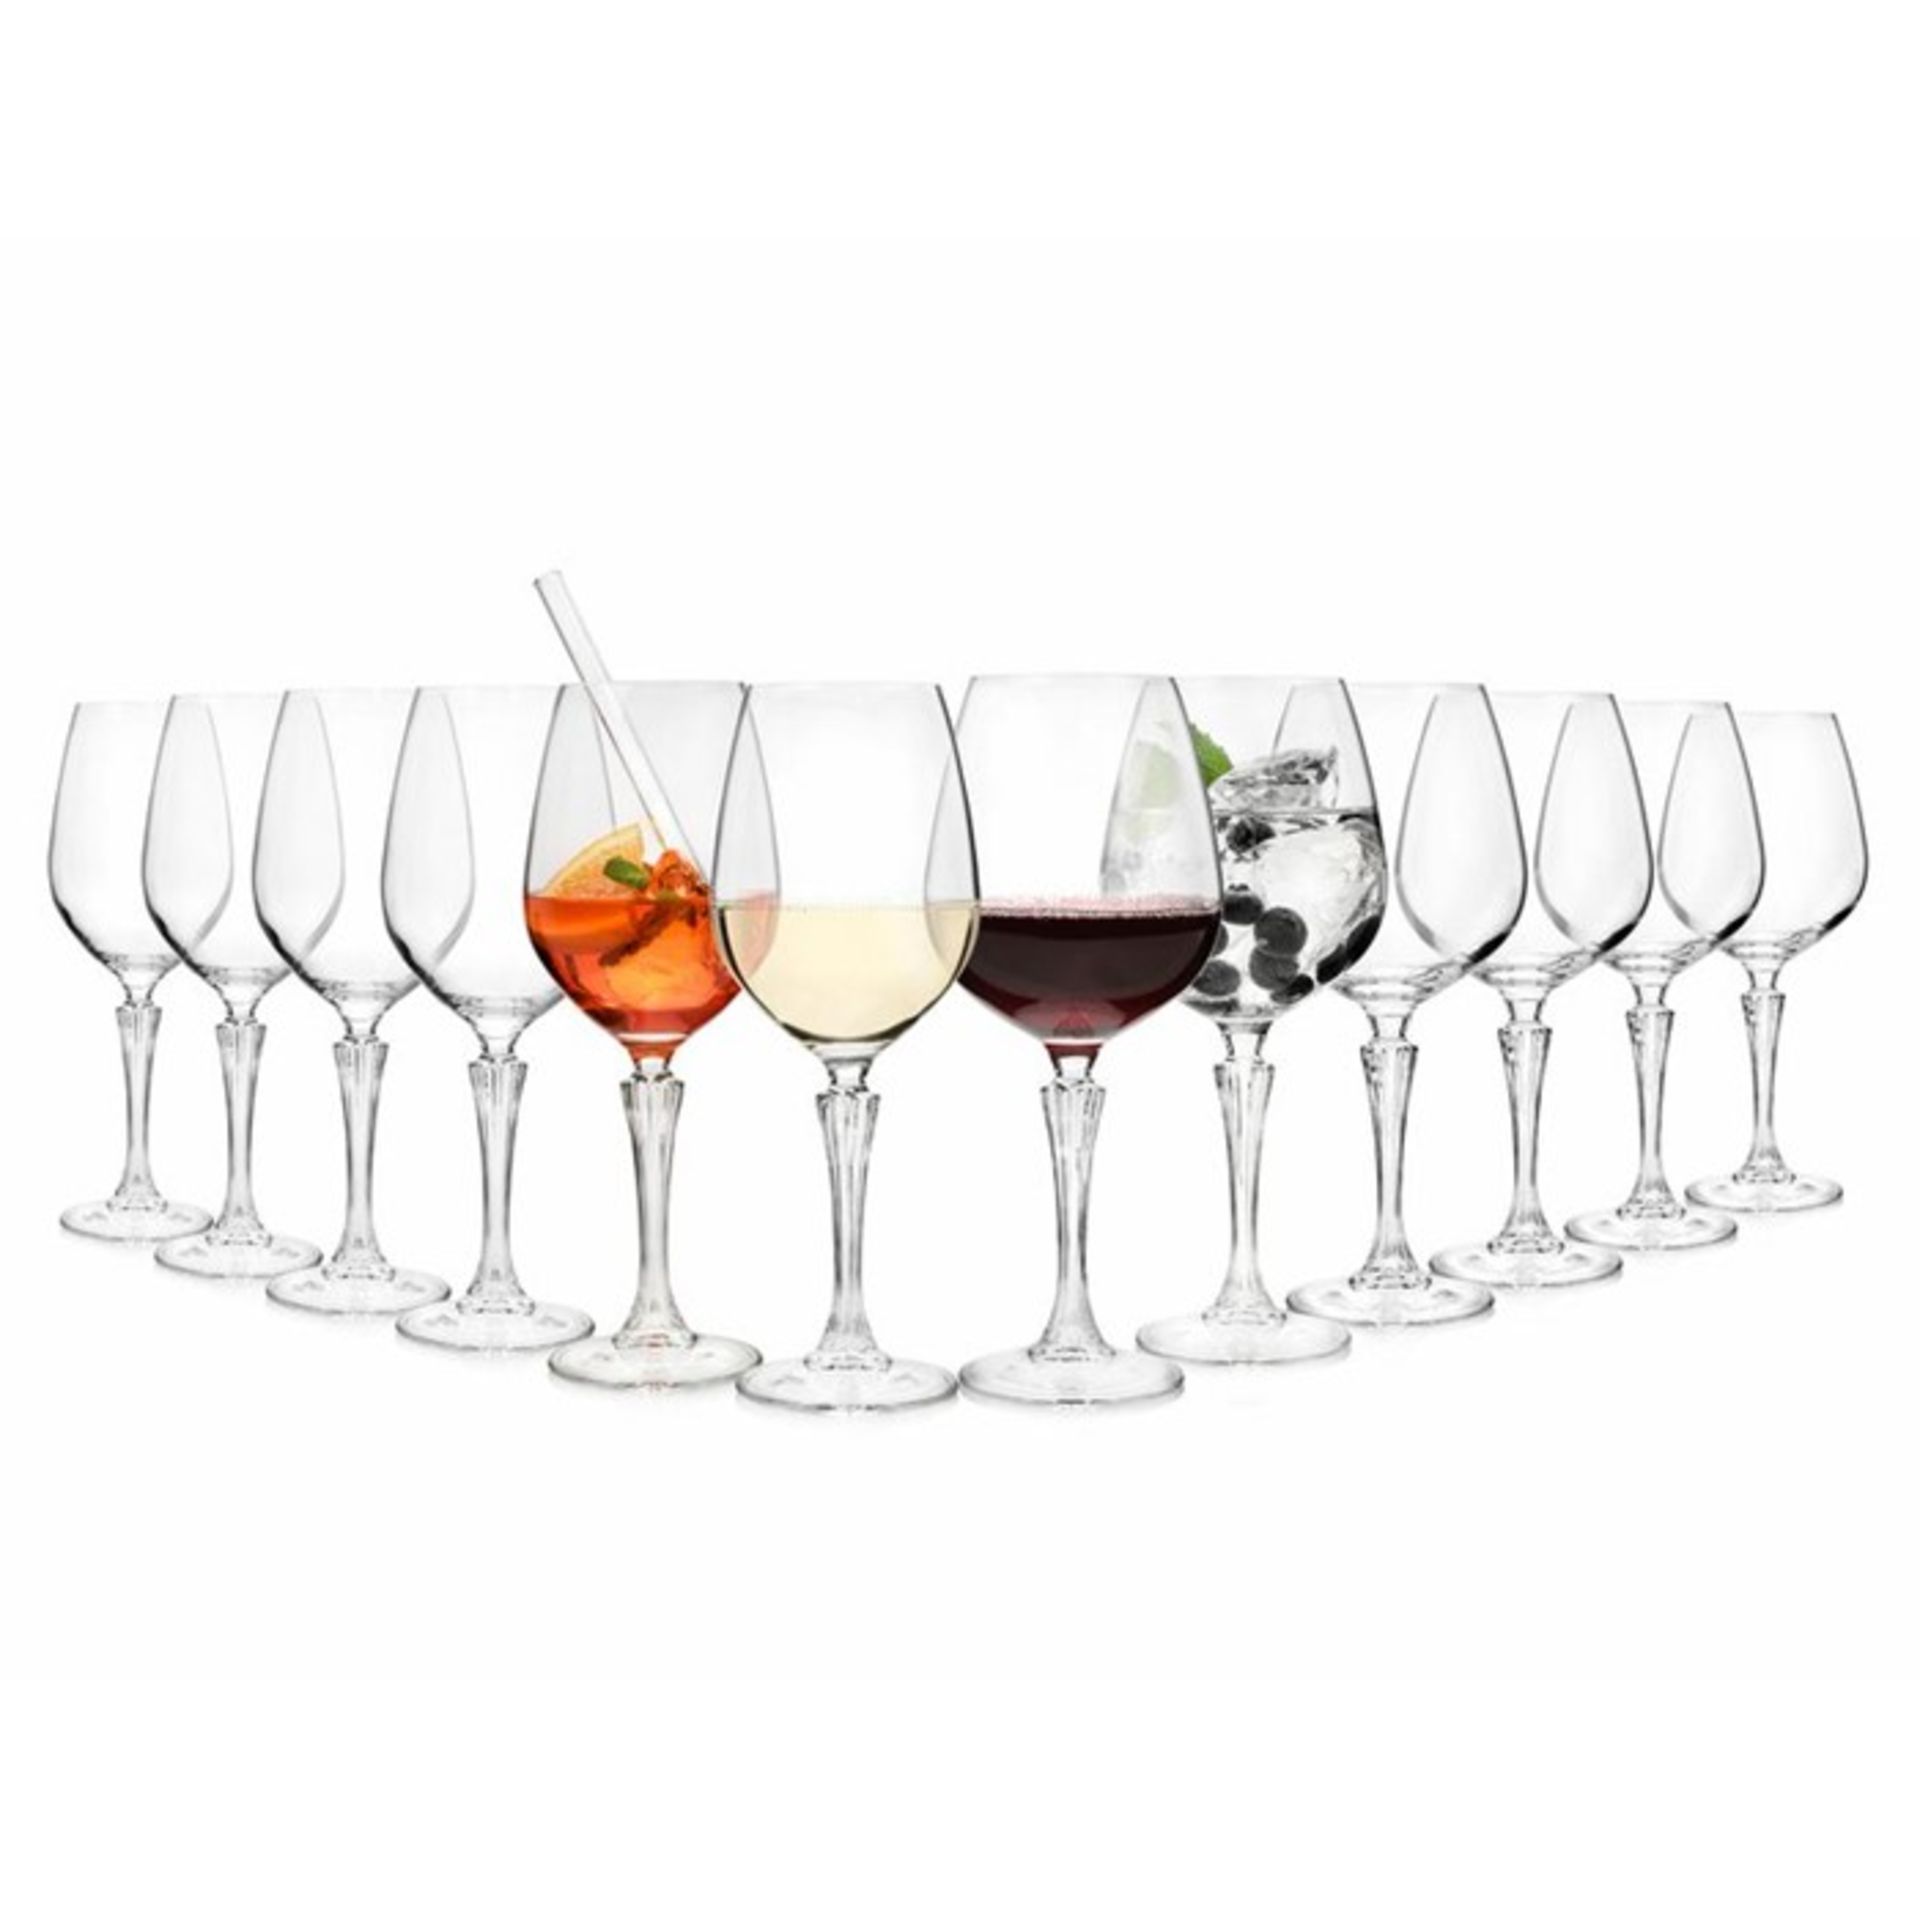 Sänger, Glamor Ceramic Stemmed White Glass (6X RED WINE GLASS. 6X WHITE WINE GLASS) - RRP £34.99 (